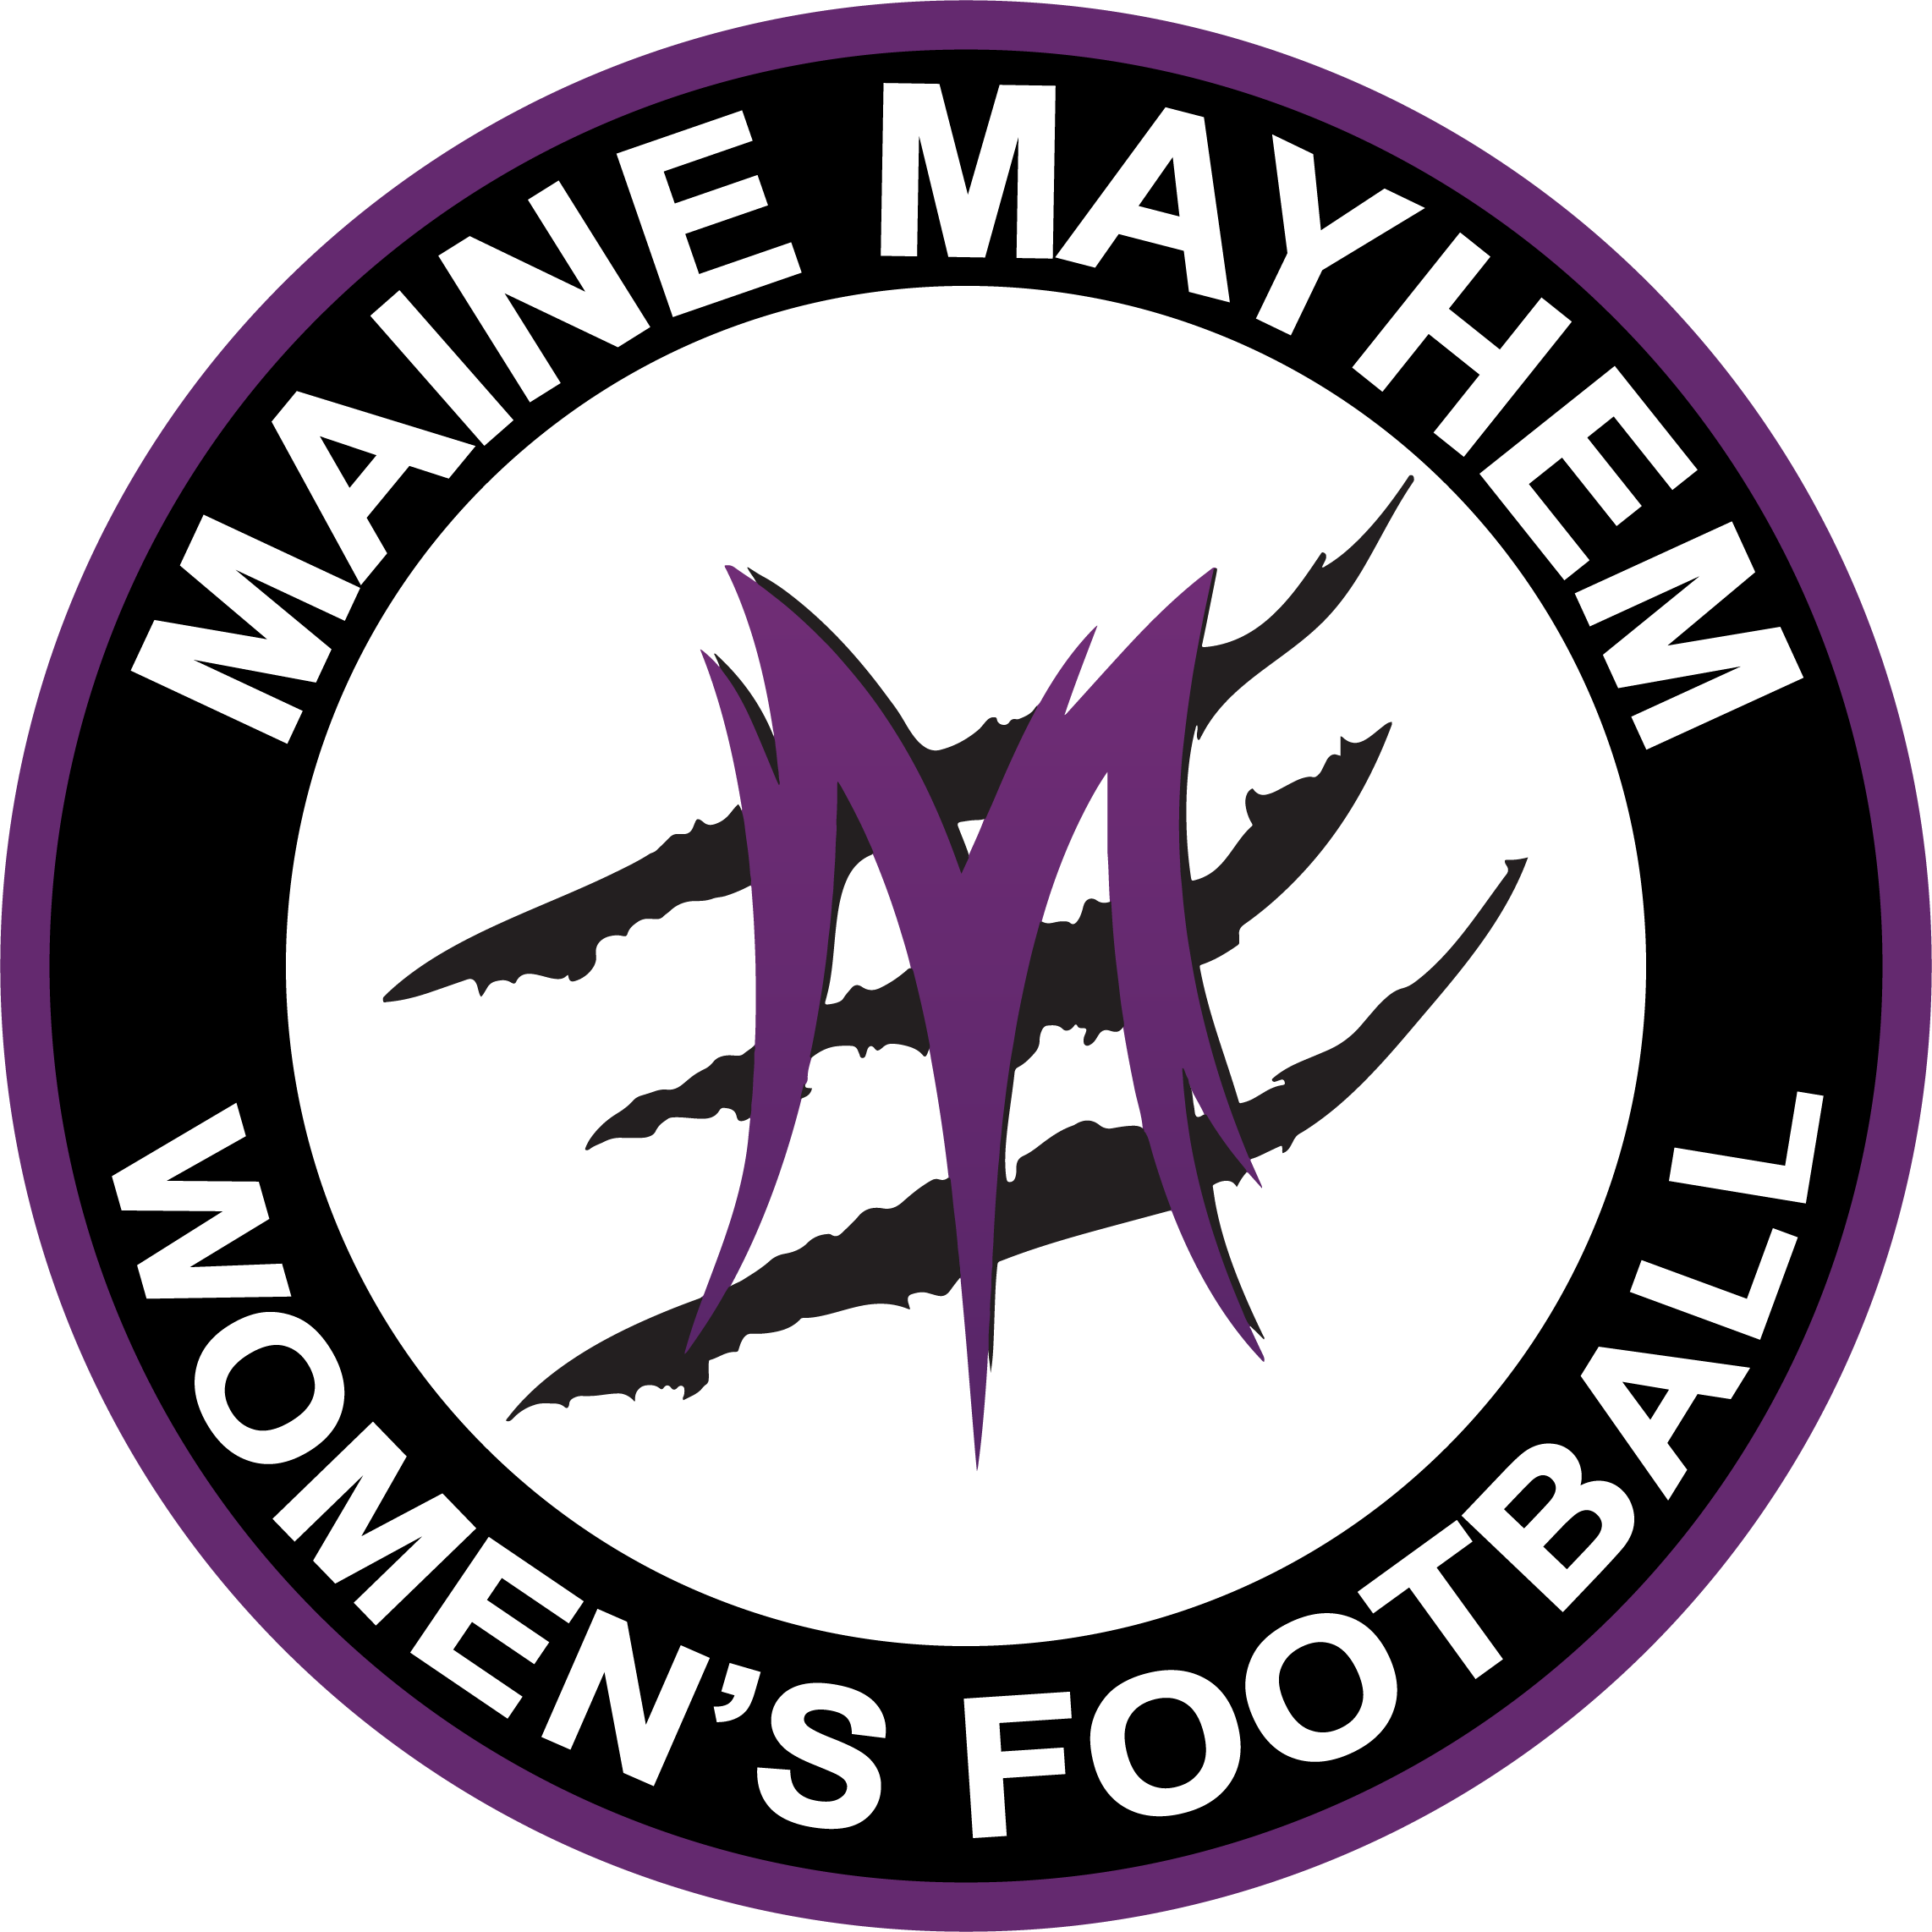 Maine Mayhem Football